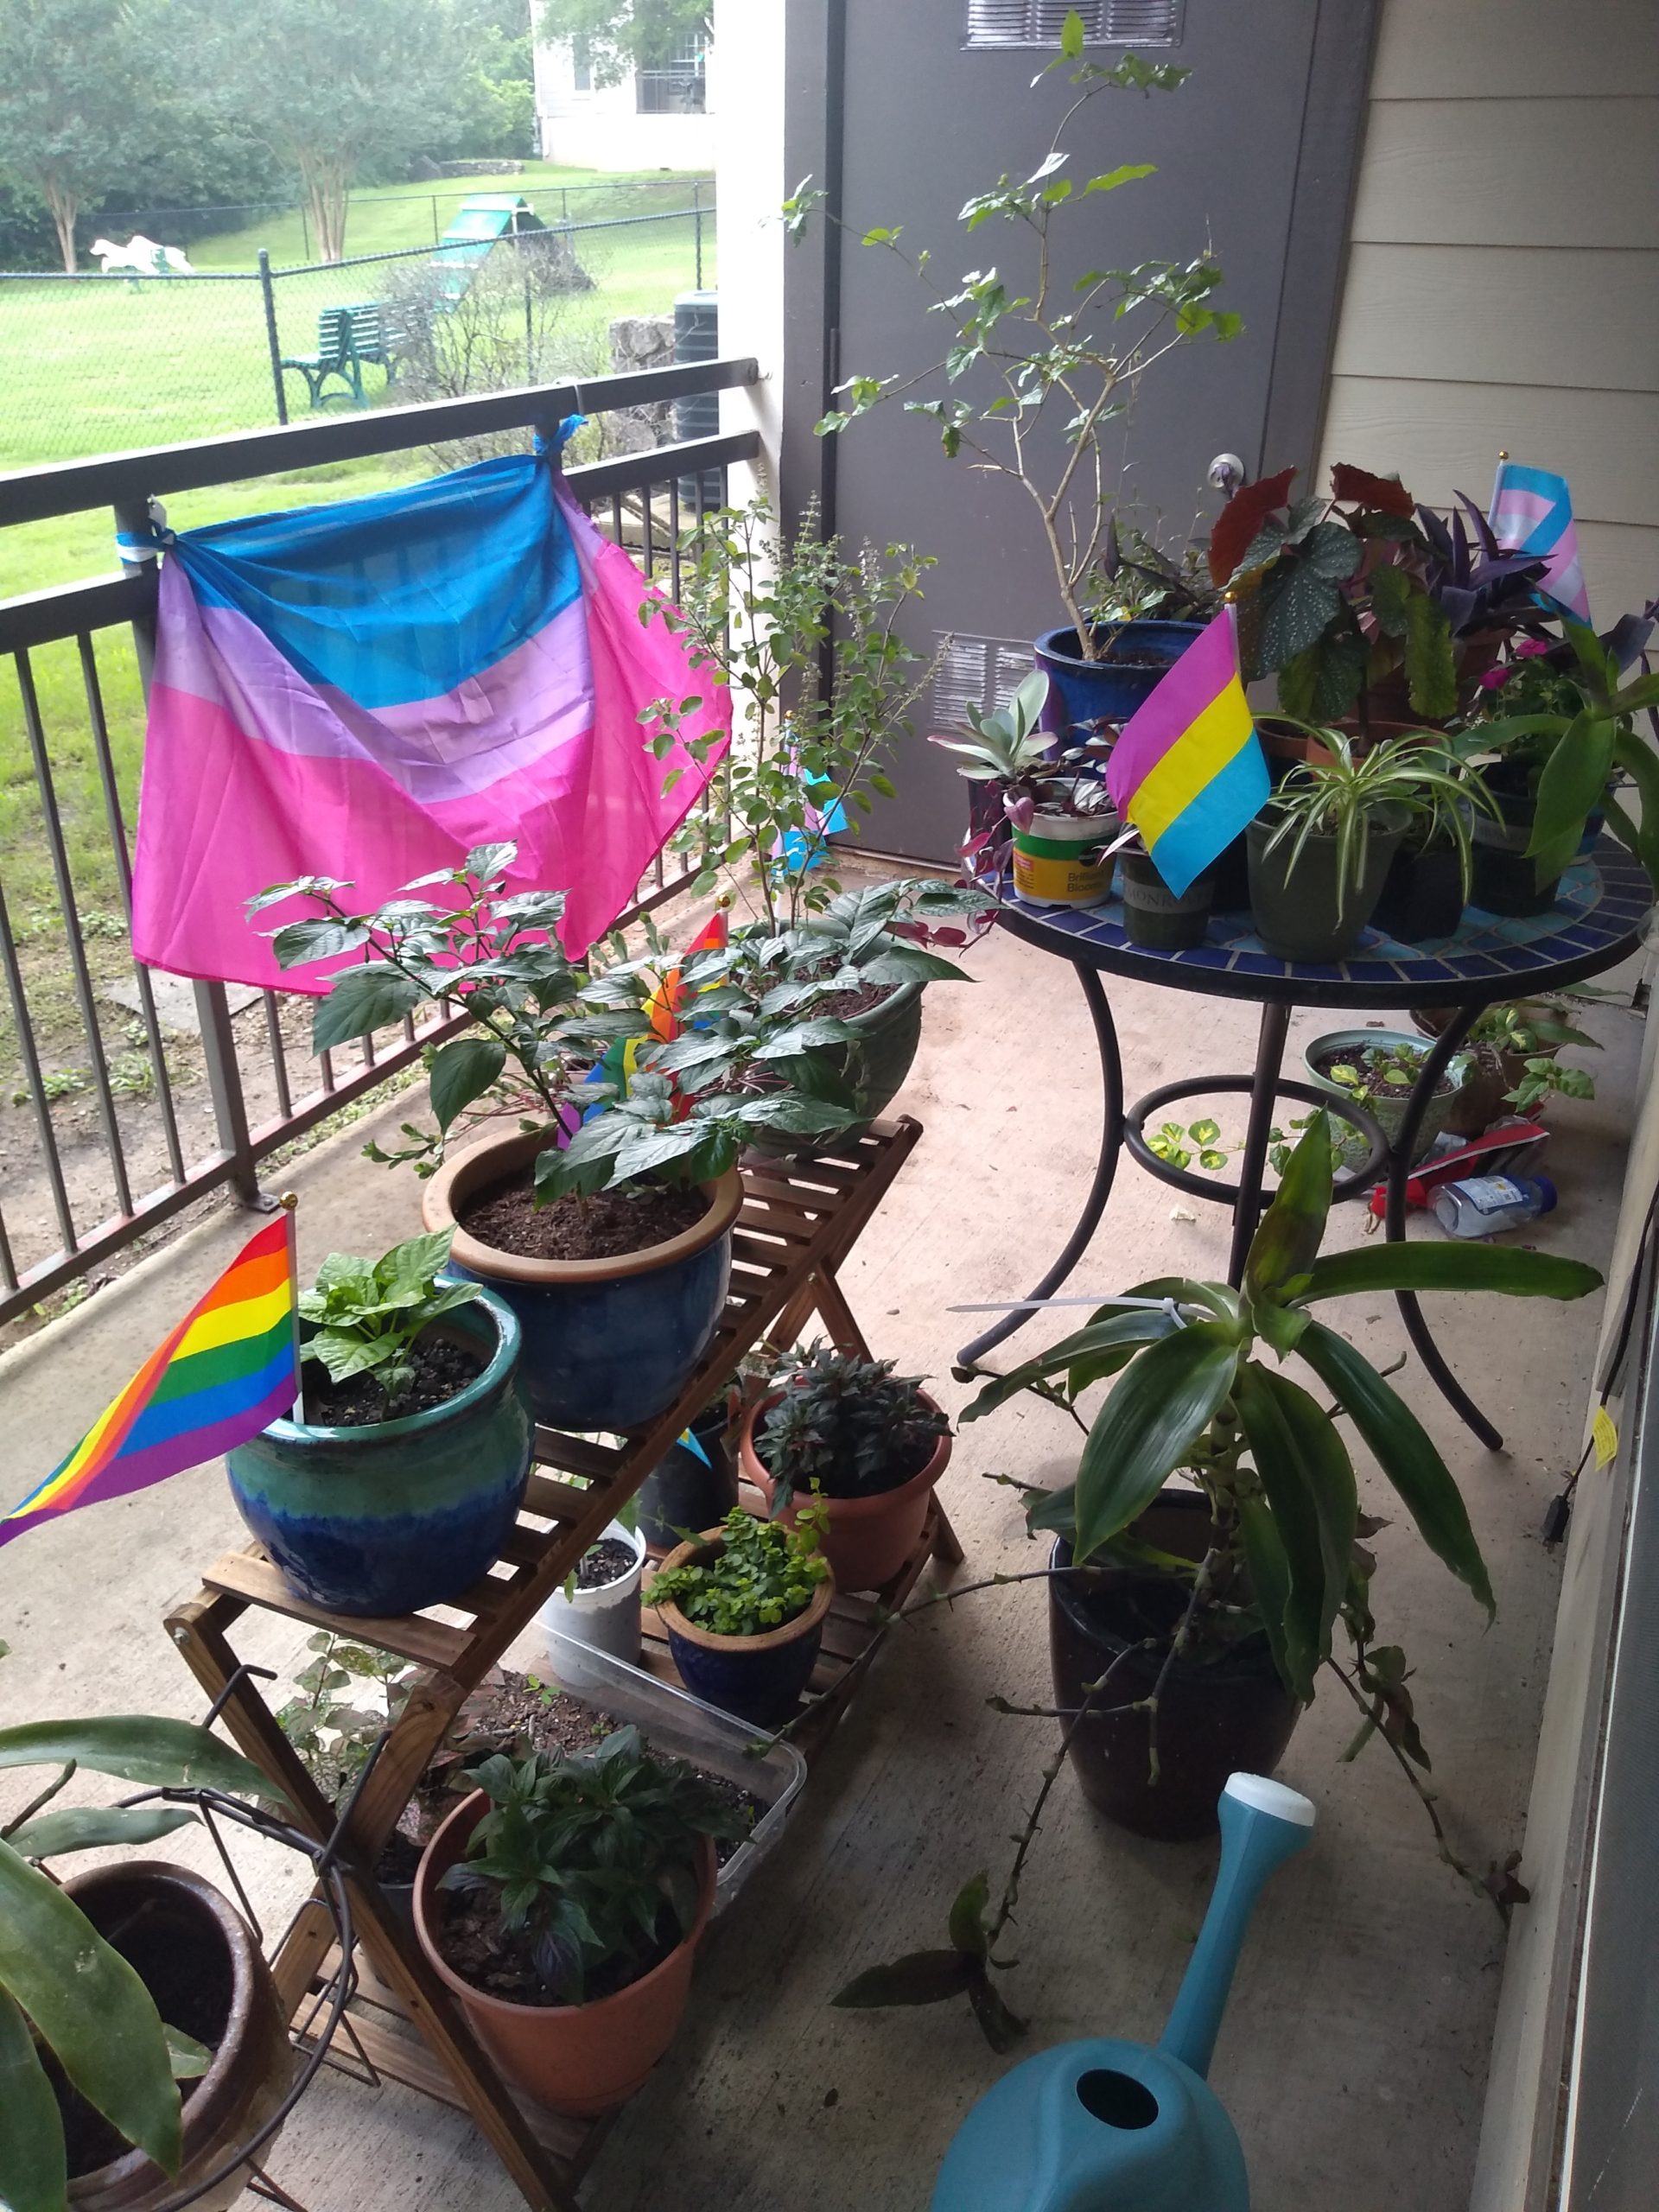 Descripción de la imagen: Una hermosa disposición de plantas en maceta en un patio. Muchas plantas comparten sus macetas con pequeñas banderas, como la bandera del arco iris del Orgullo, la bandera trans y la bandera pansexual.